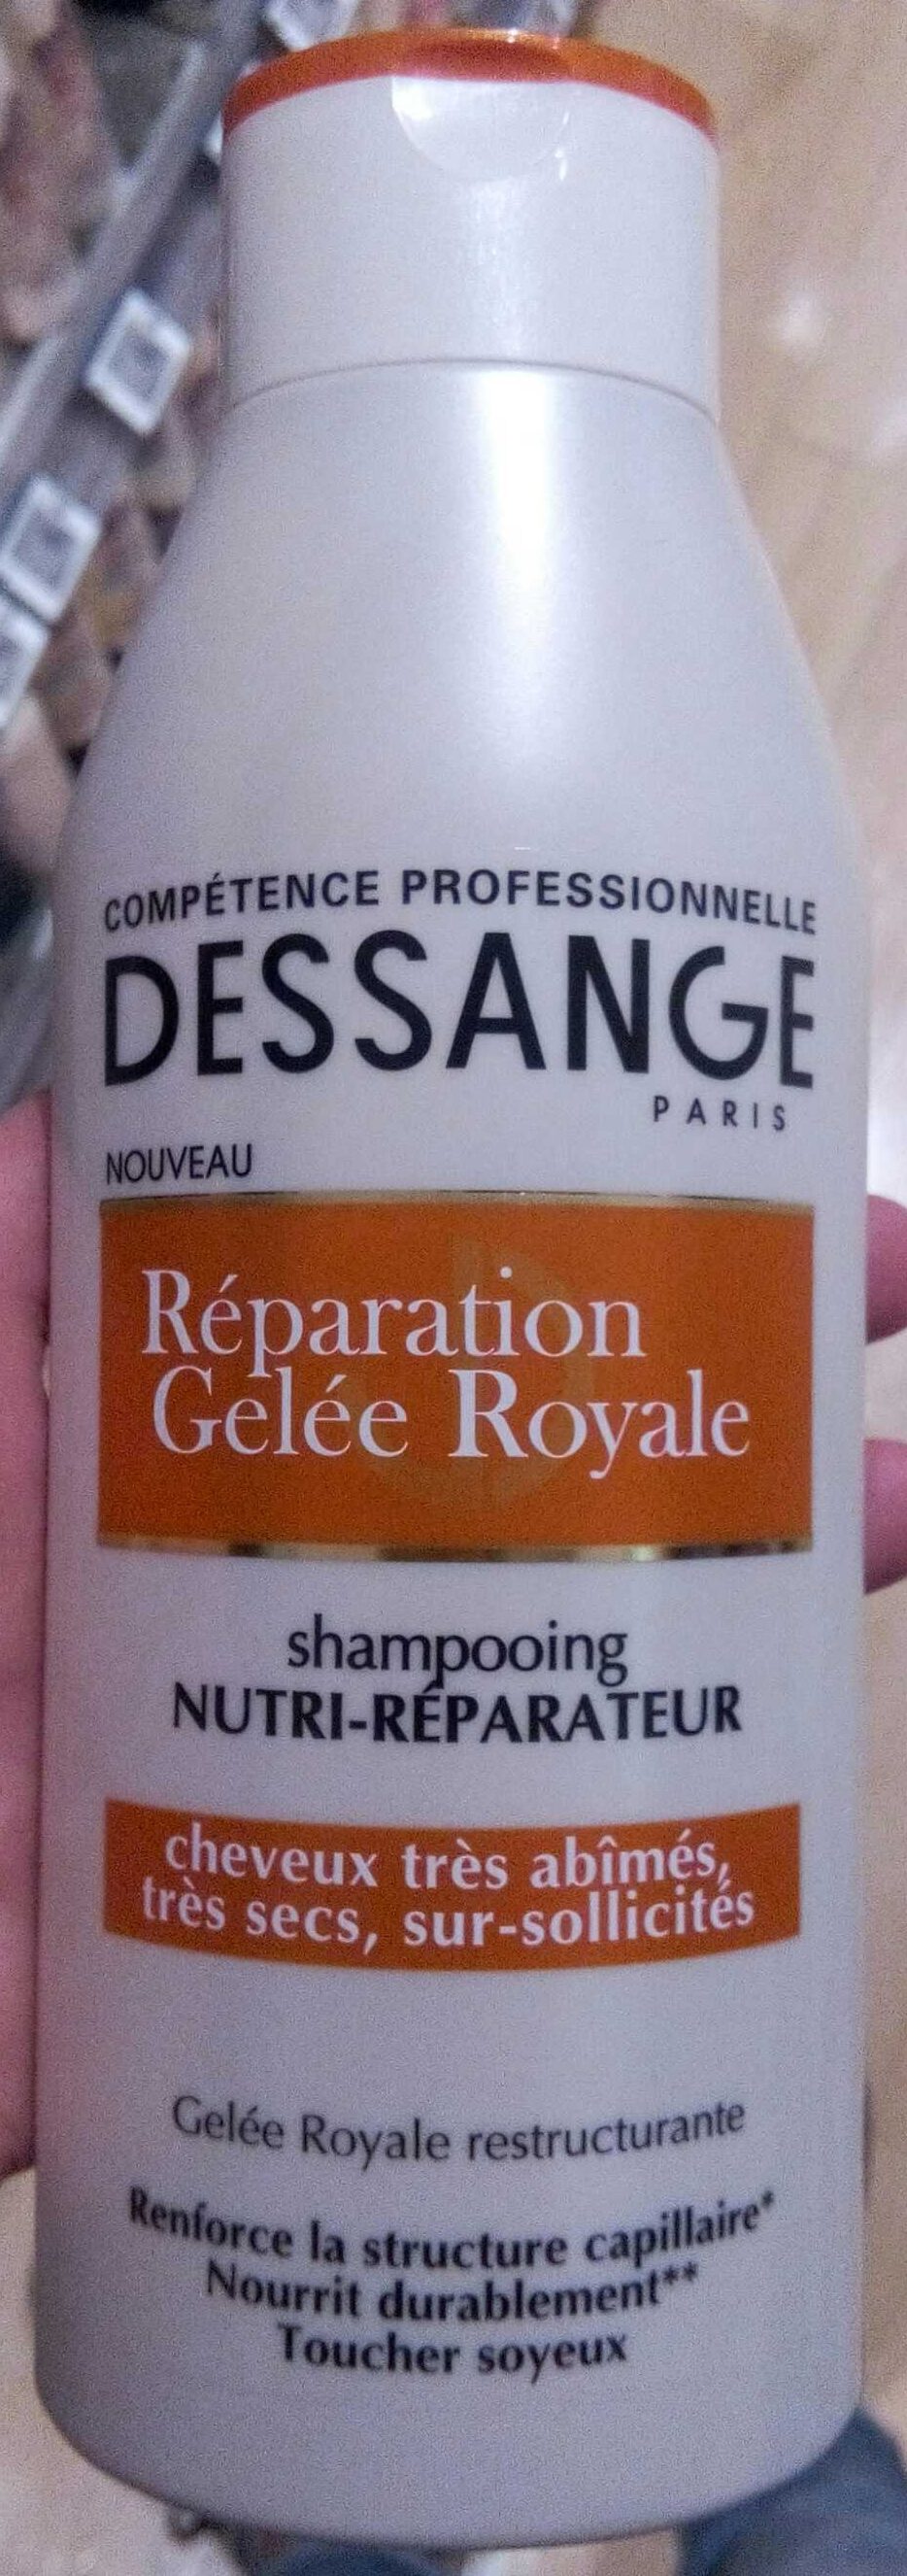 Shampooing nutri-réparateur réparation gelée royale - Product - fr